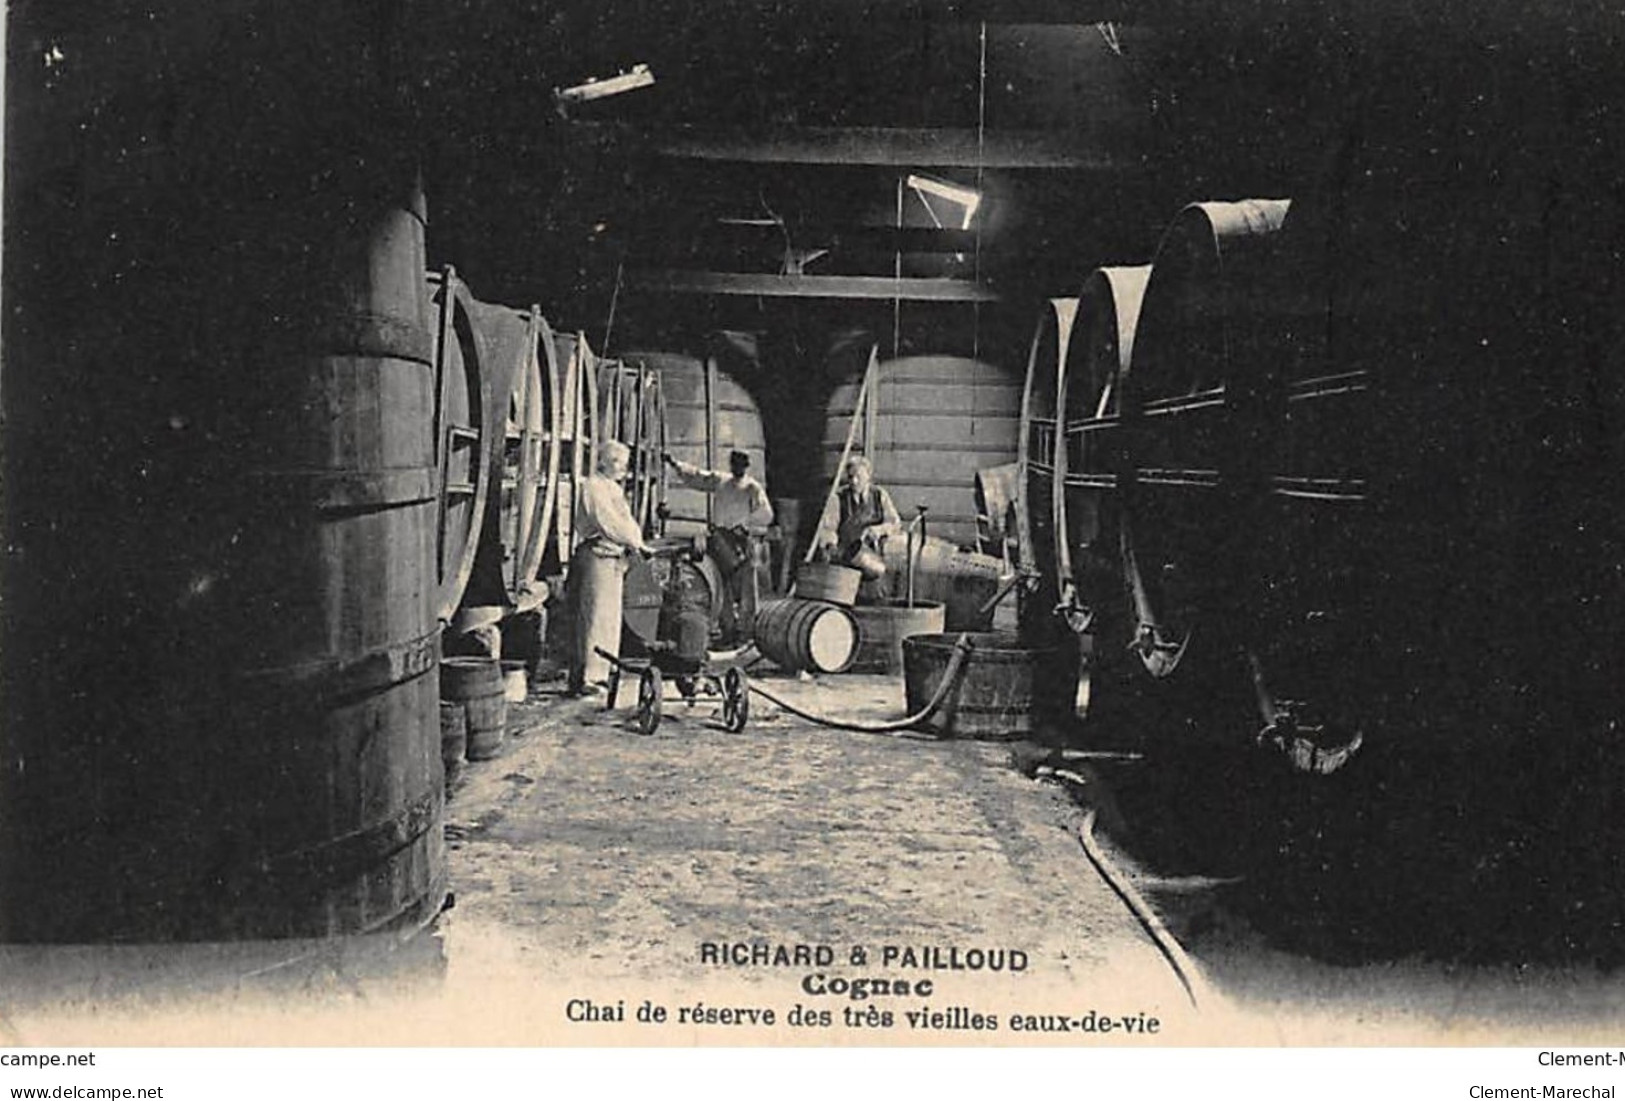 COGNAC : Richard & Pailloud, Chai De Reserve Des Tres Vieilles Eaux-de-vie - Tres Bon Etat - Cognac